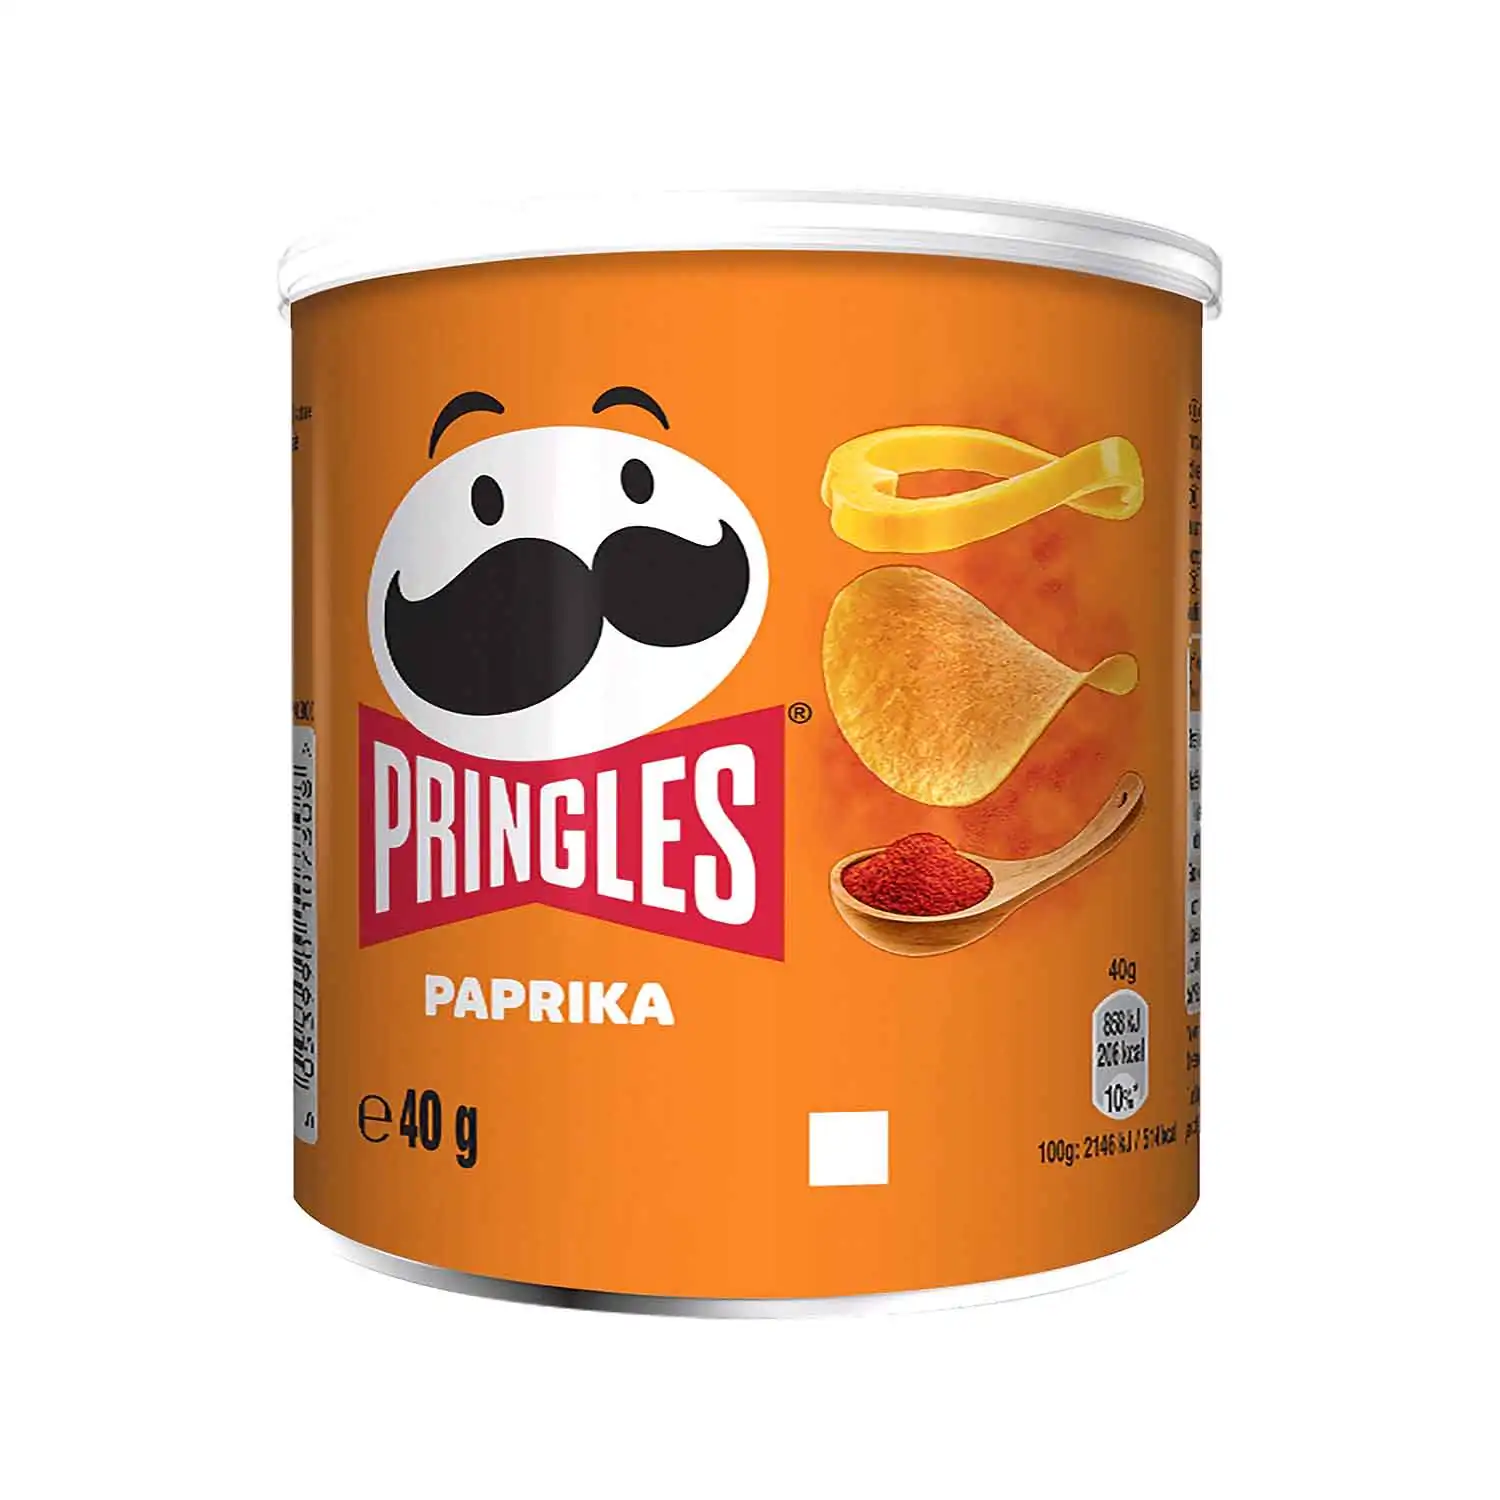 Pringles paprika 40g - Buy at Real Tobacco